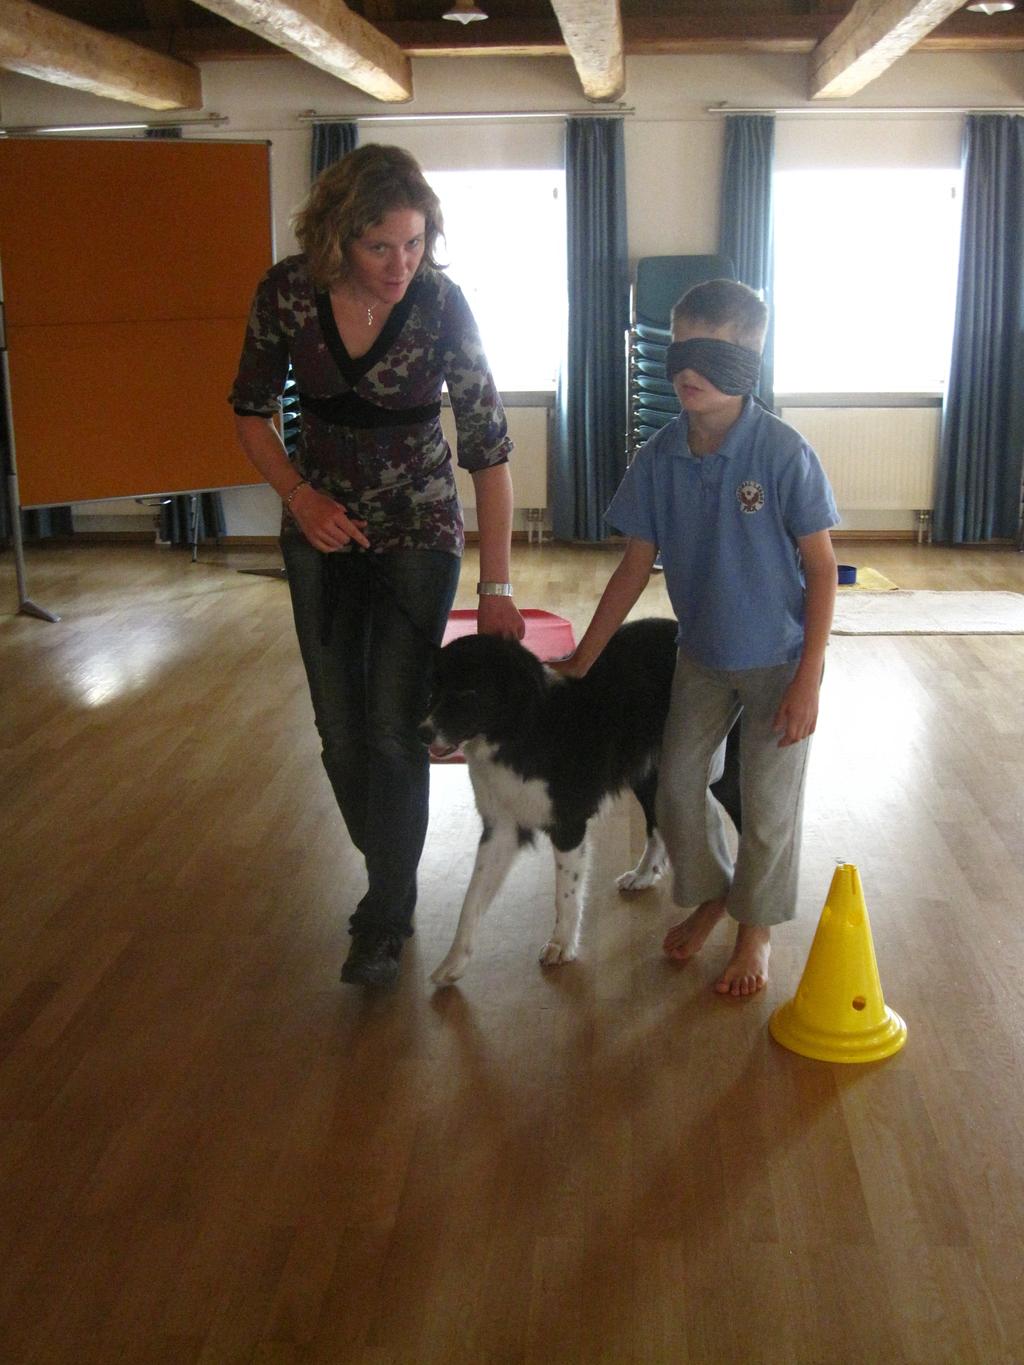 6 Angebote Tiergestützte Pädagogik Präventionsprojekte Pädagogische Maßnahmen unterstützt durch den Einsatz von Tieren Lernförderung Tiergestützte Therapie Integration der Tiergestützten